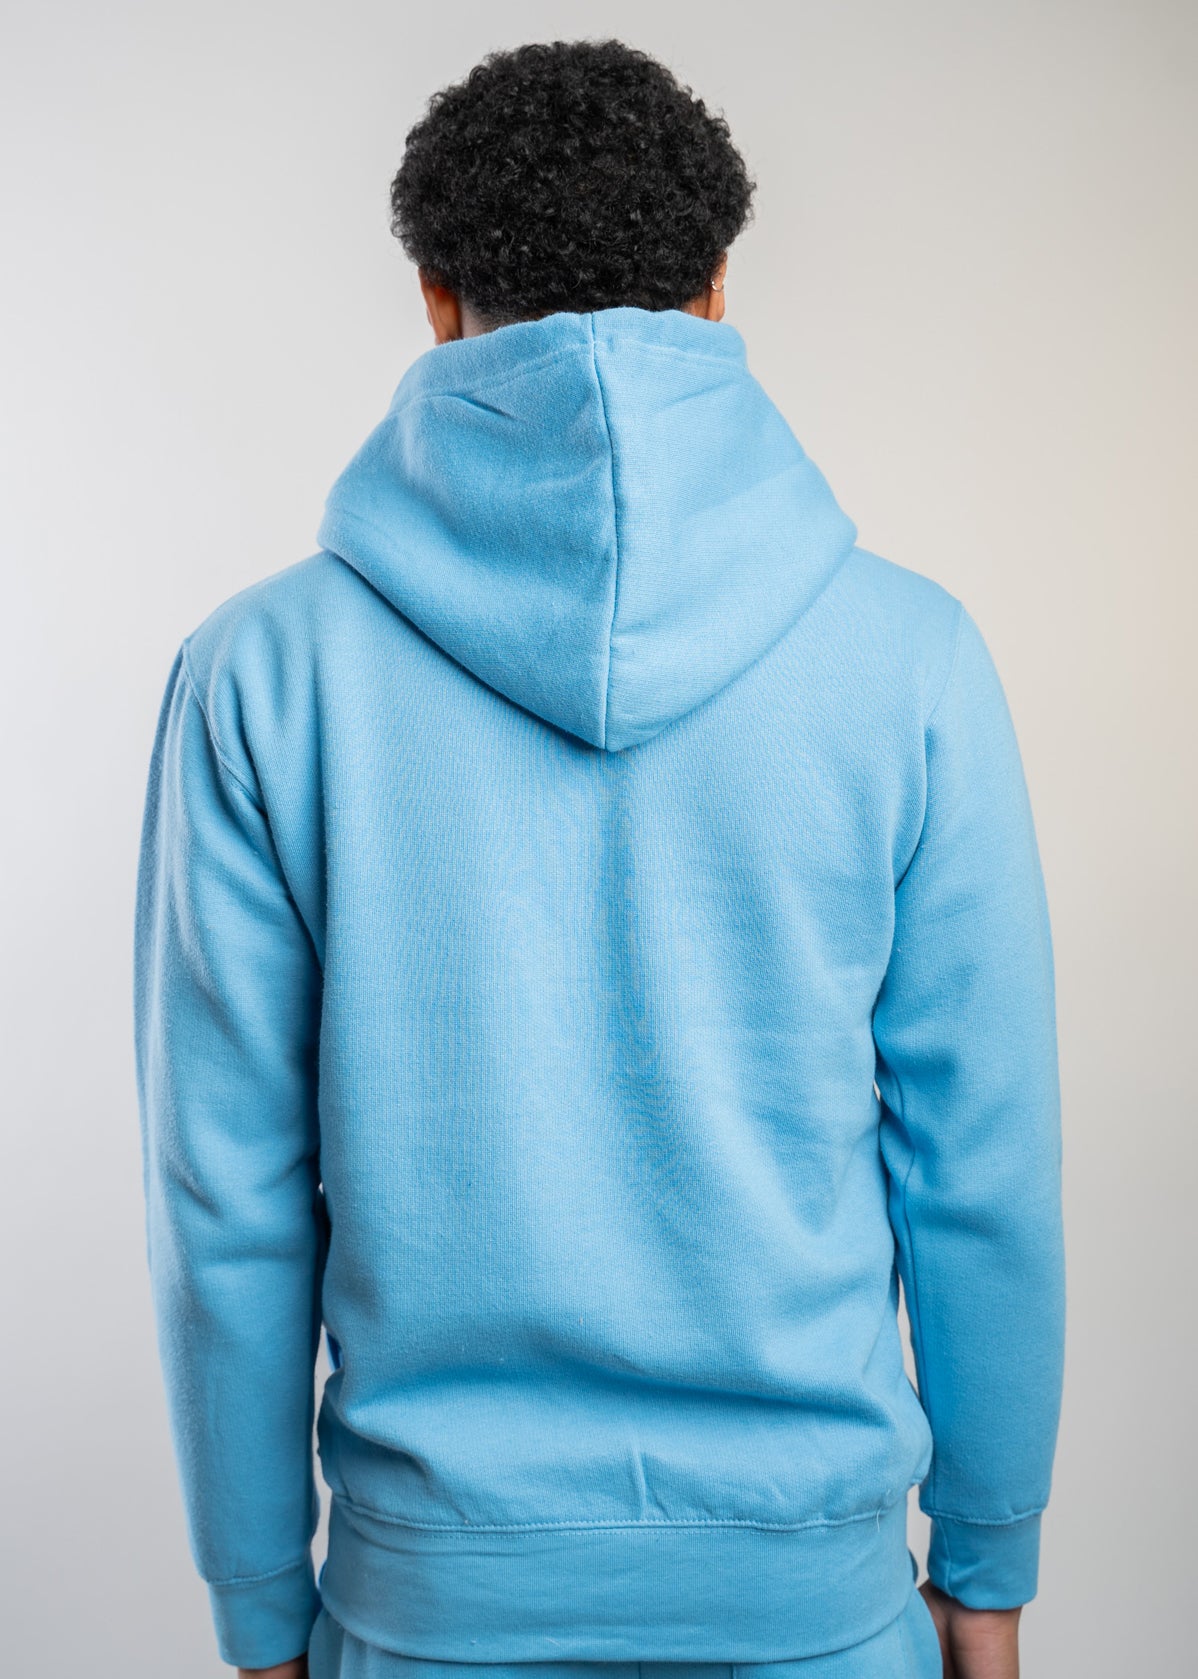 Sky Blue Heavy Blend Fleece Hooded Sweatshirt